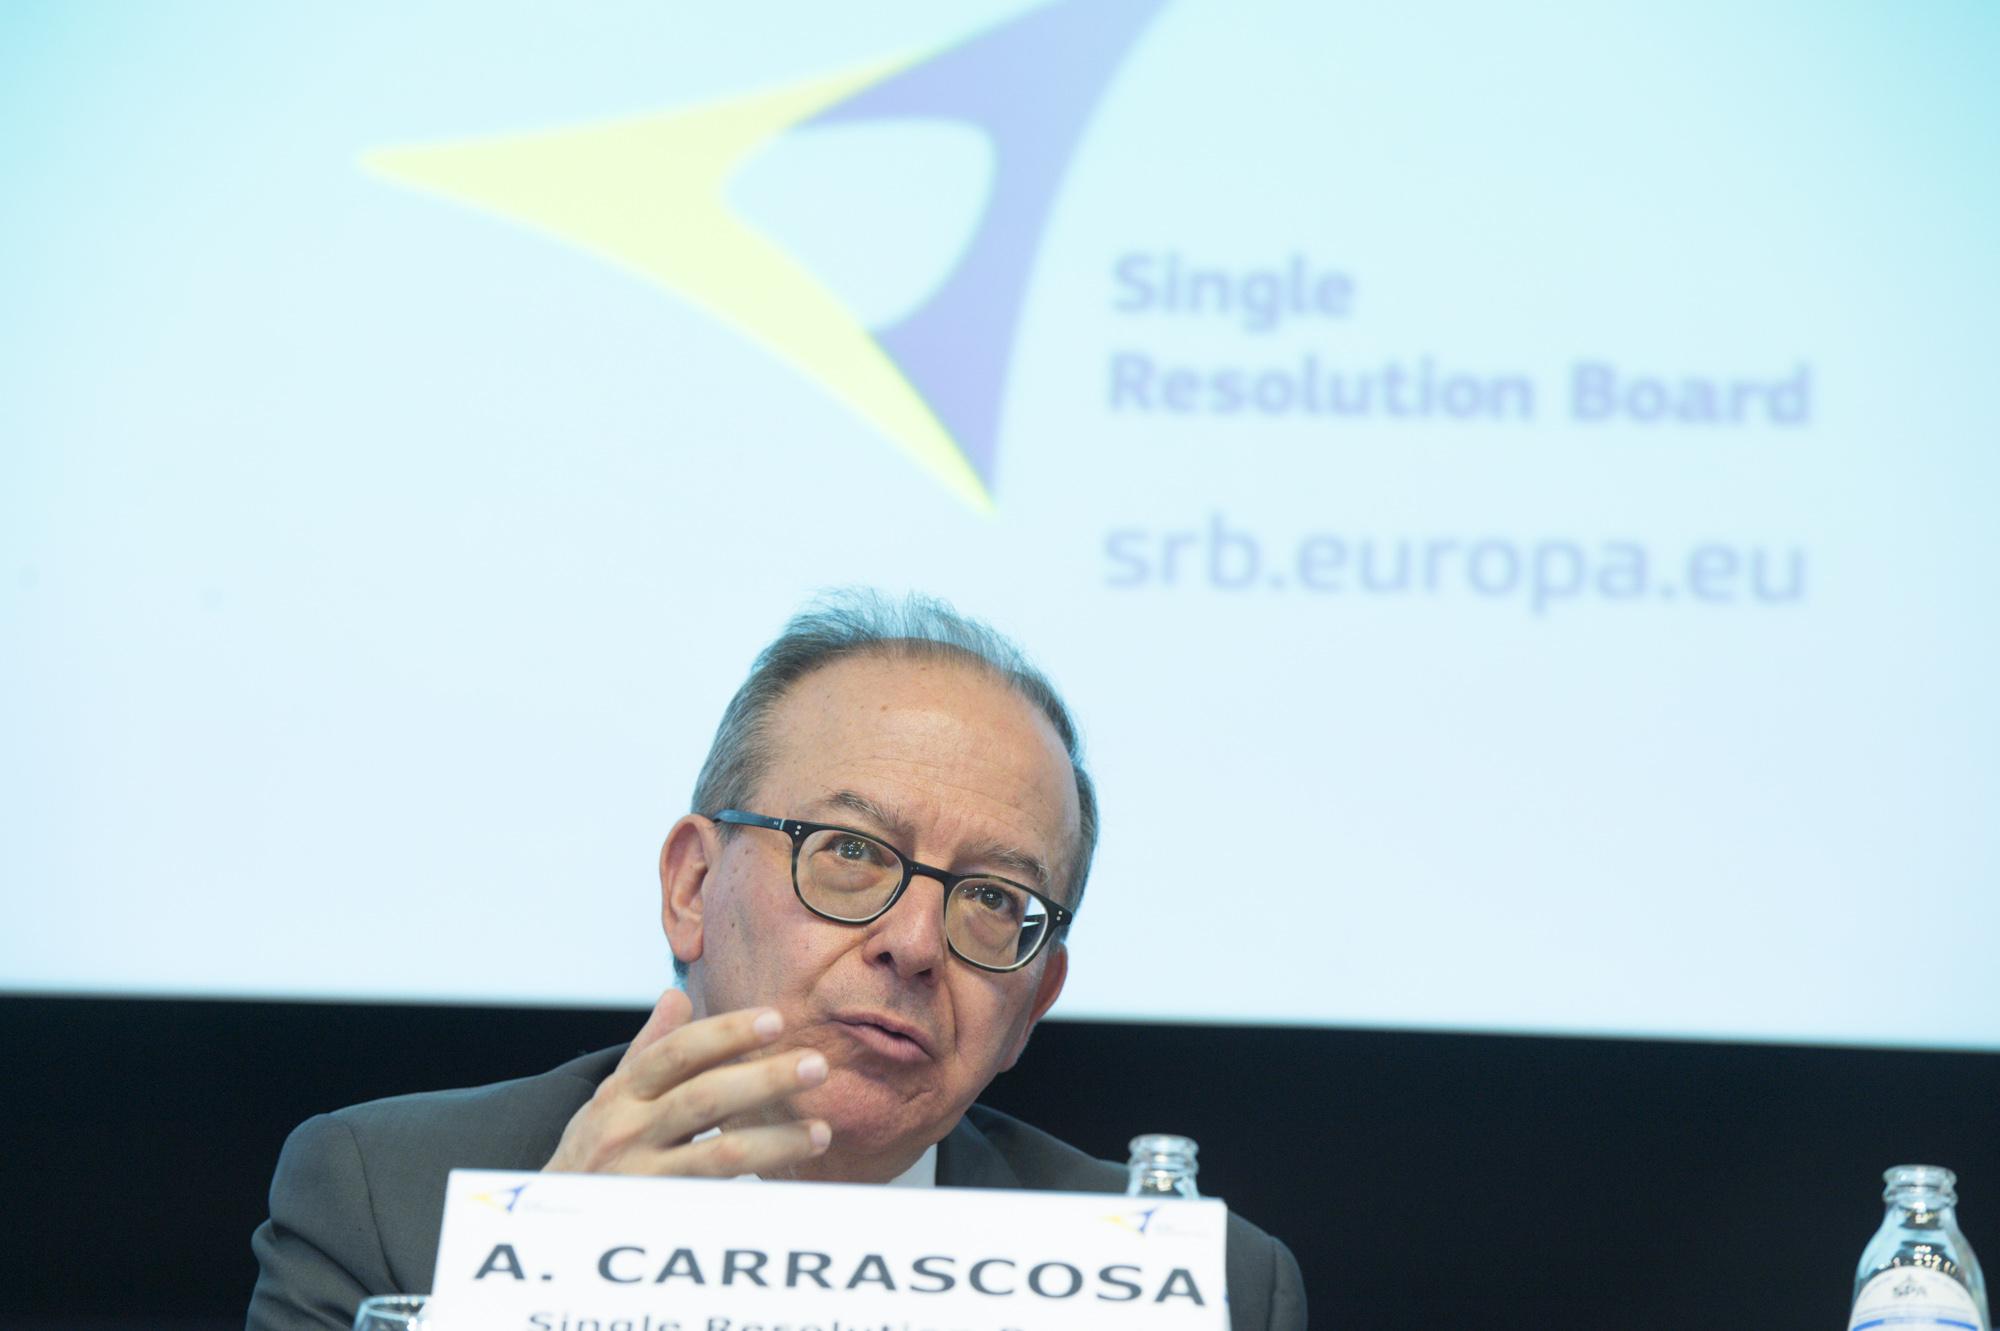 Antonio Carrascosa, Member of the Board, Single Resolution Board